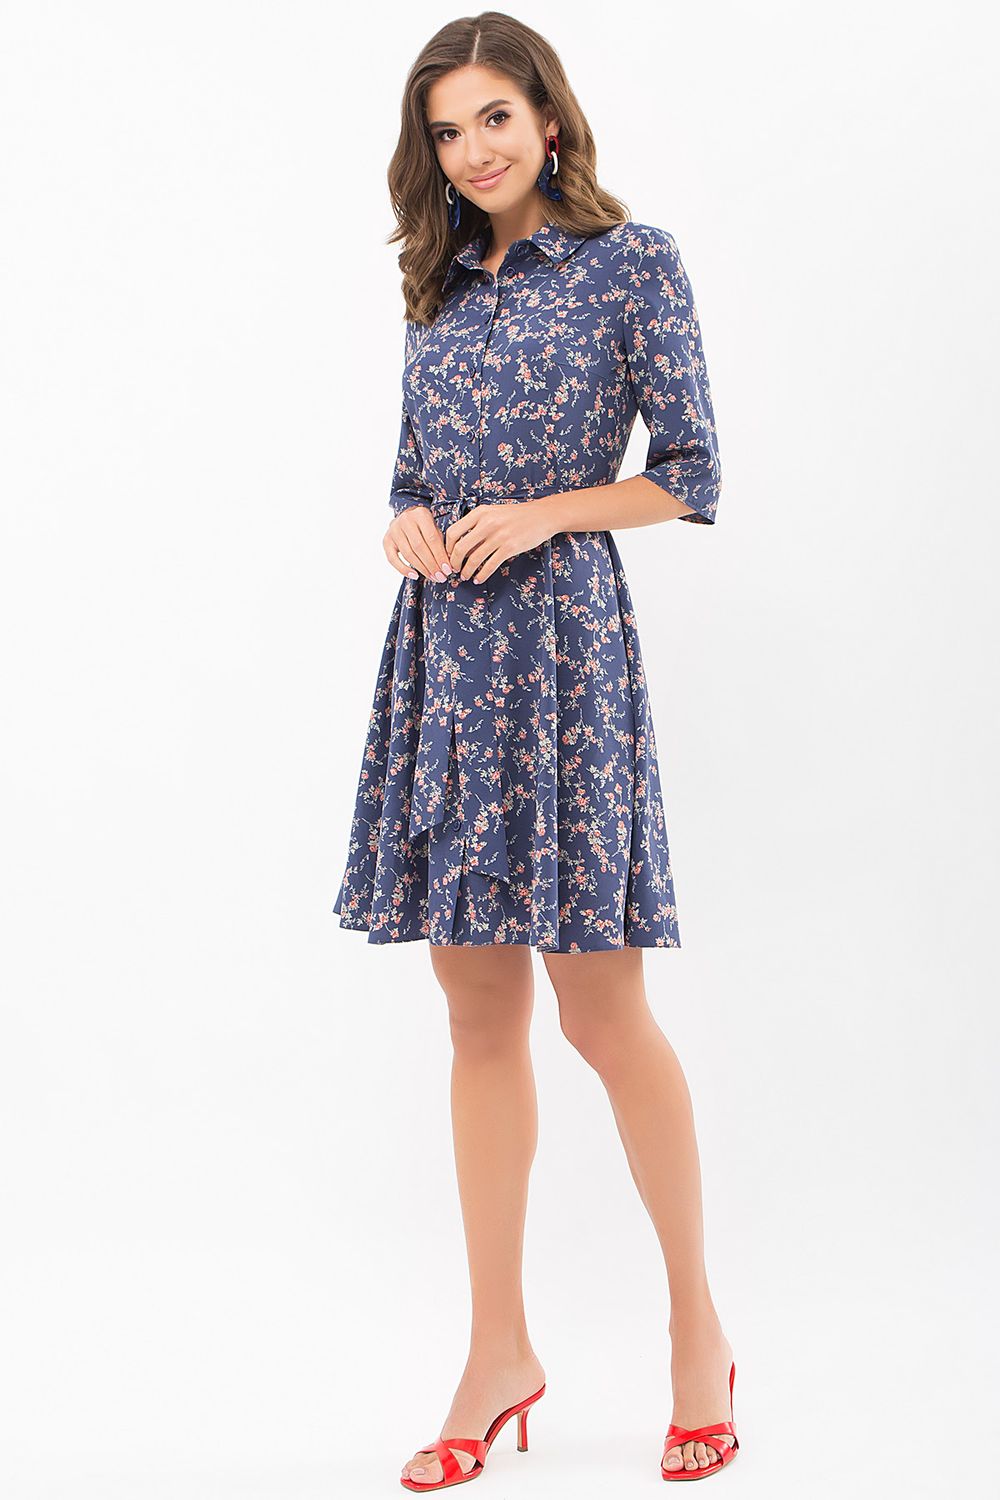 Літнє плаття сорочка зі спідницею сонце синє - фото